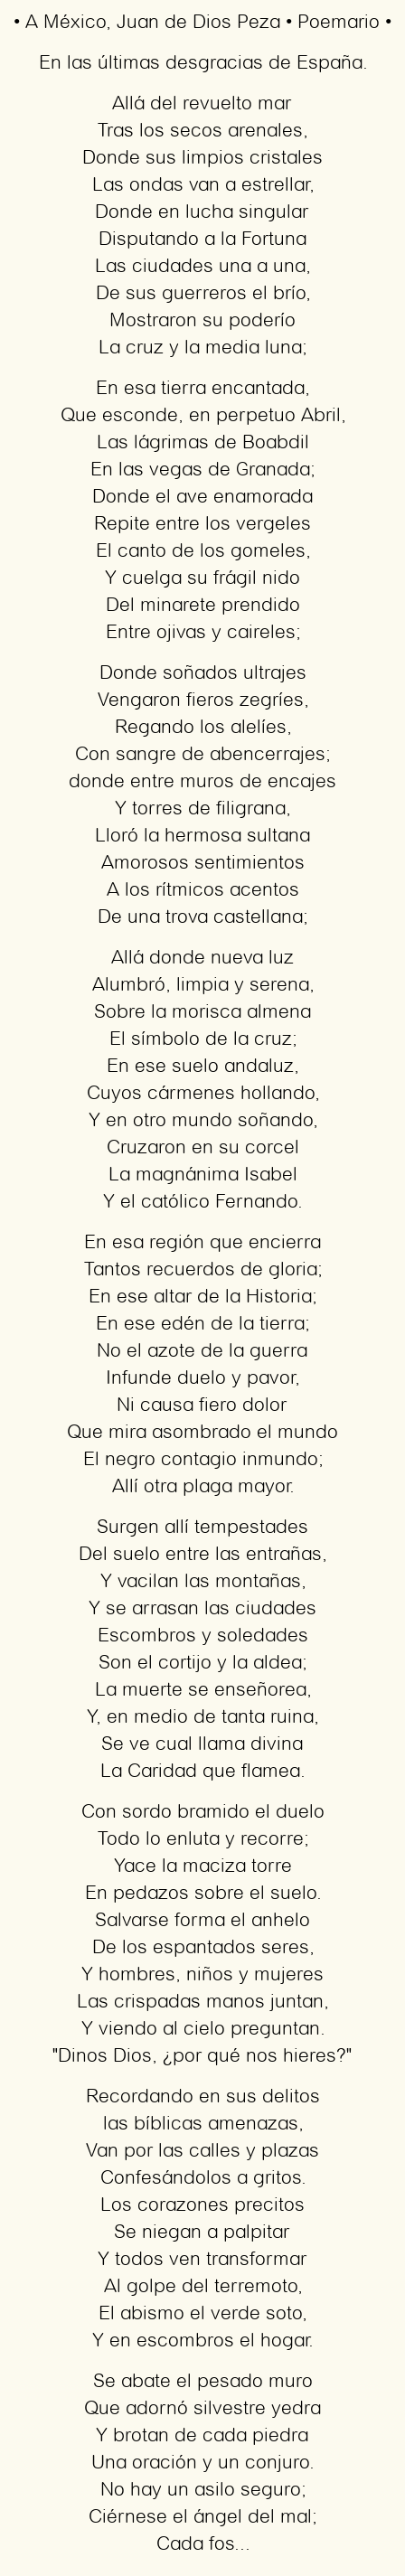 Imagen con el poema A México, por Juan de Dios Peza